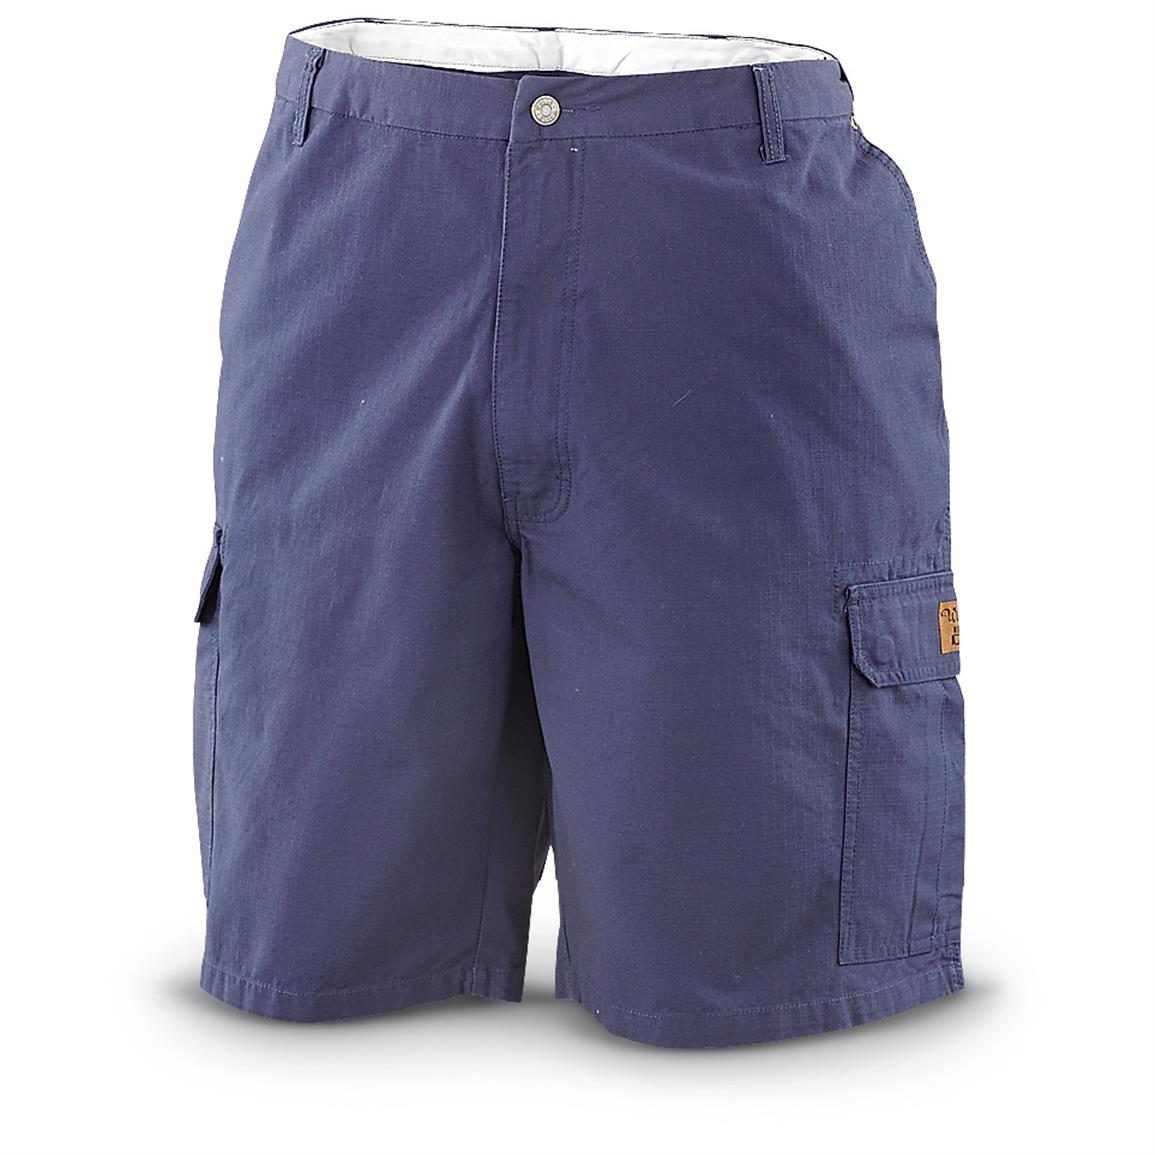 Walls Cargo Pocket Shorts - 610704, Shorts at Sportsman's Guide